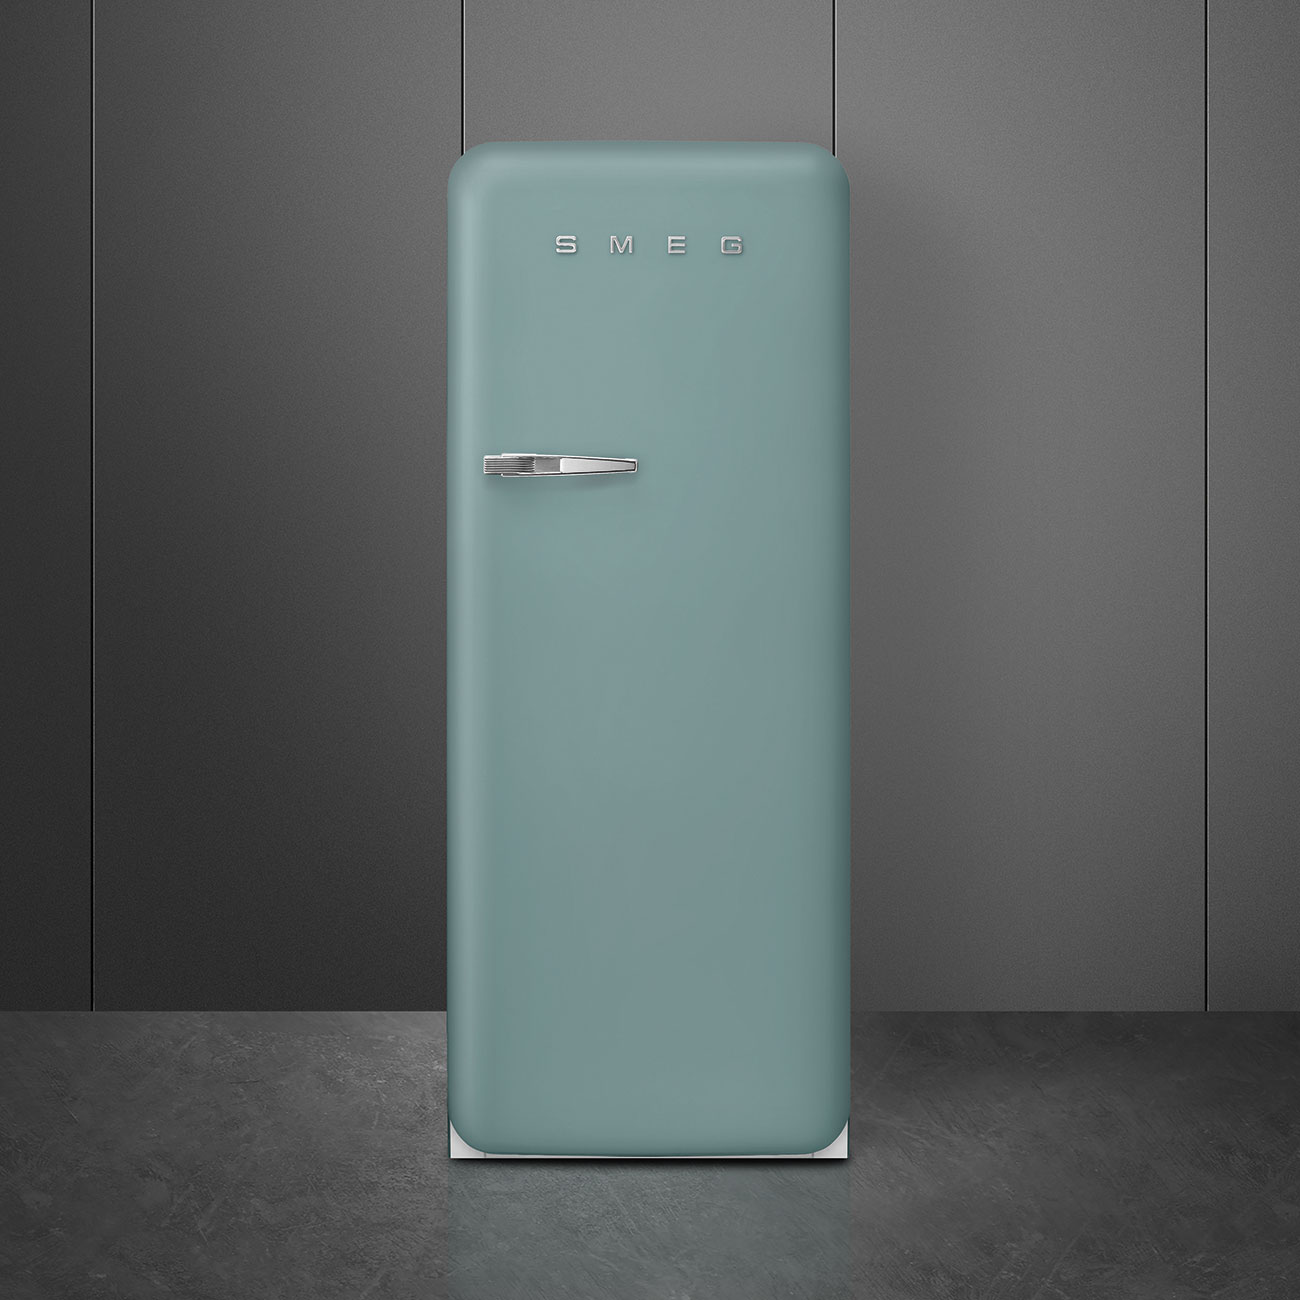 Emerald Green refrigerator - Smeg_9